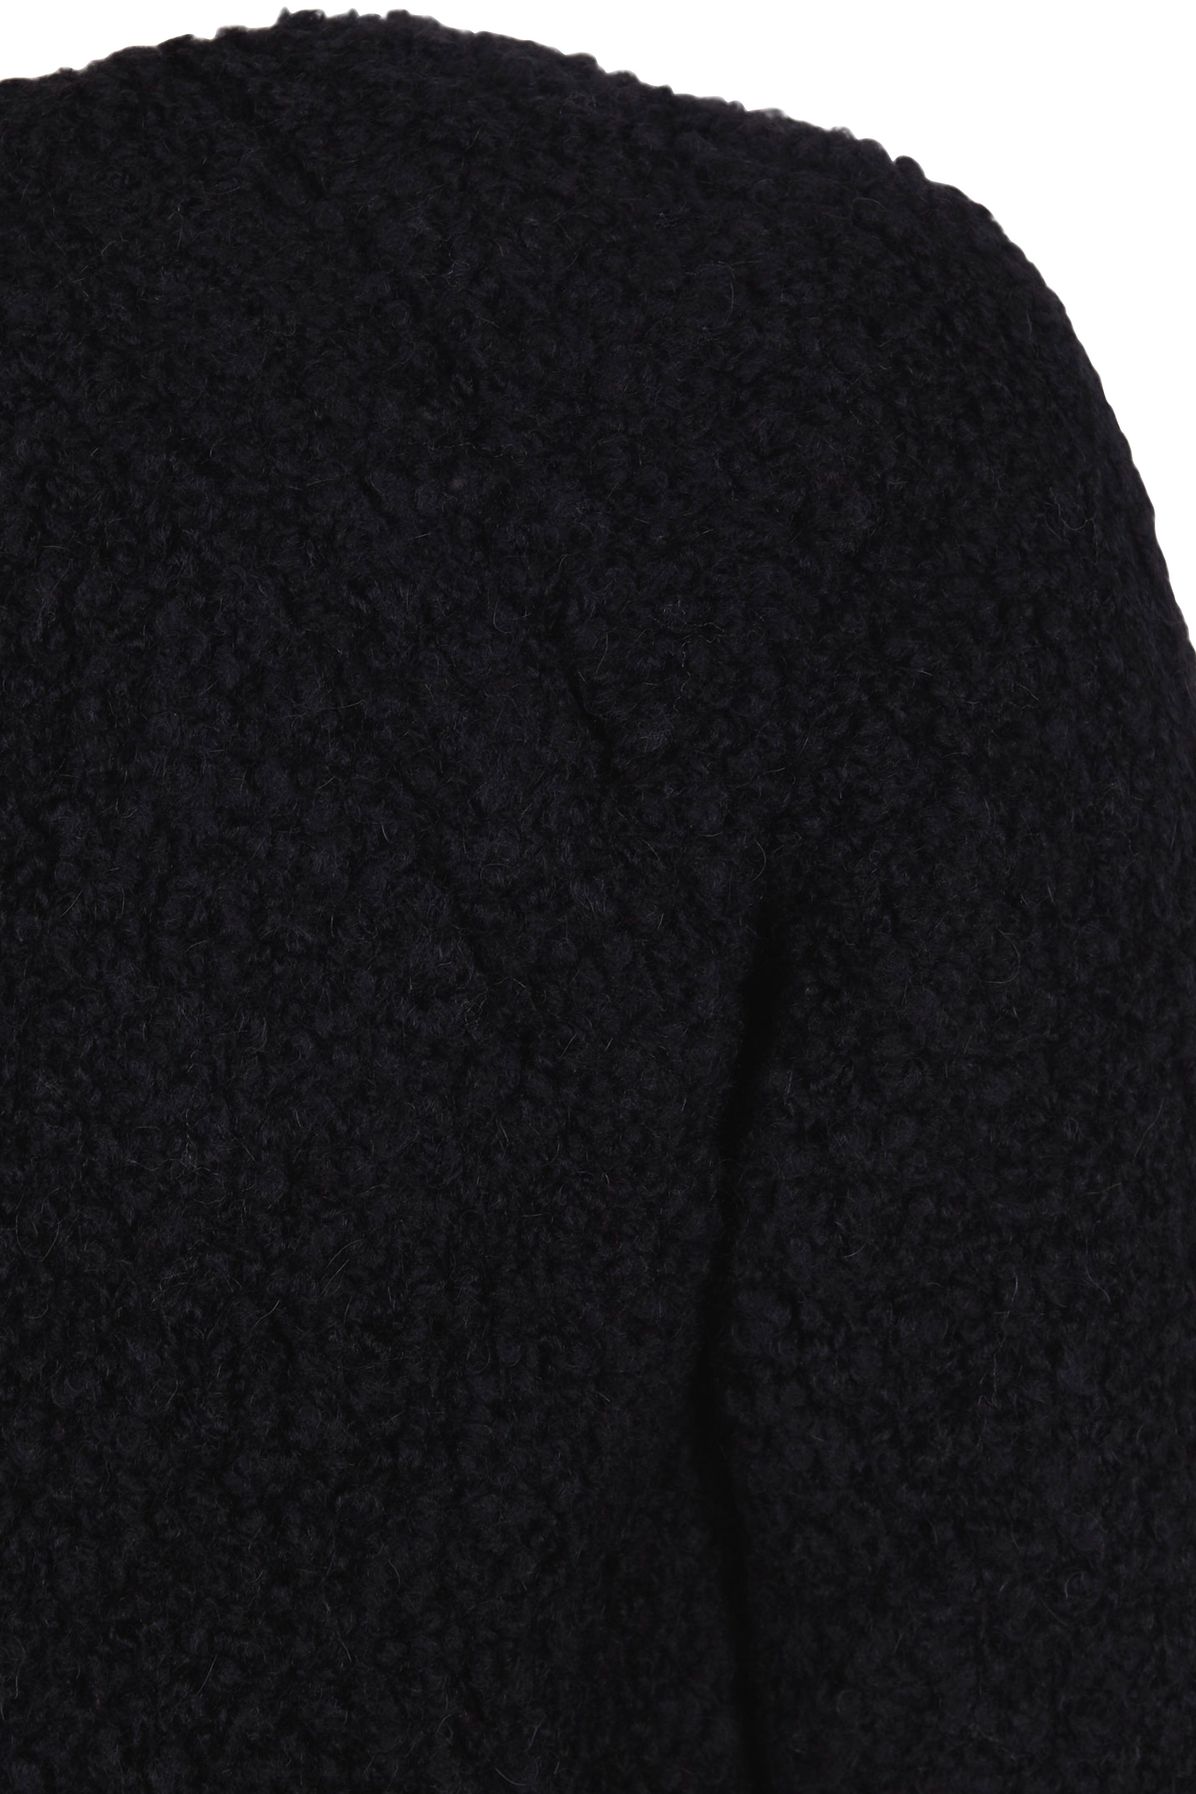 Cortana Tender Knitwear Jacket